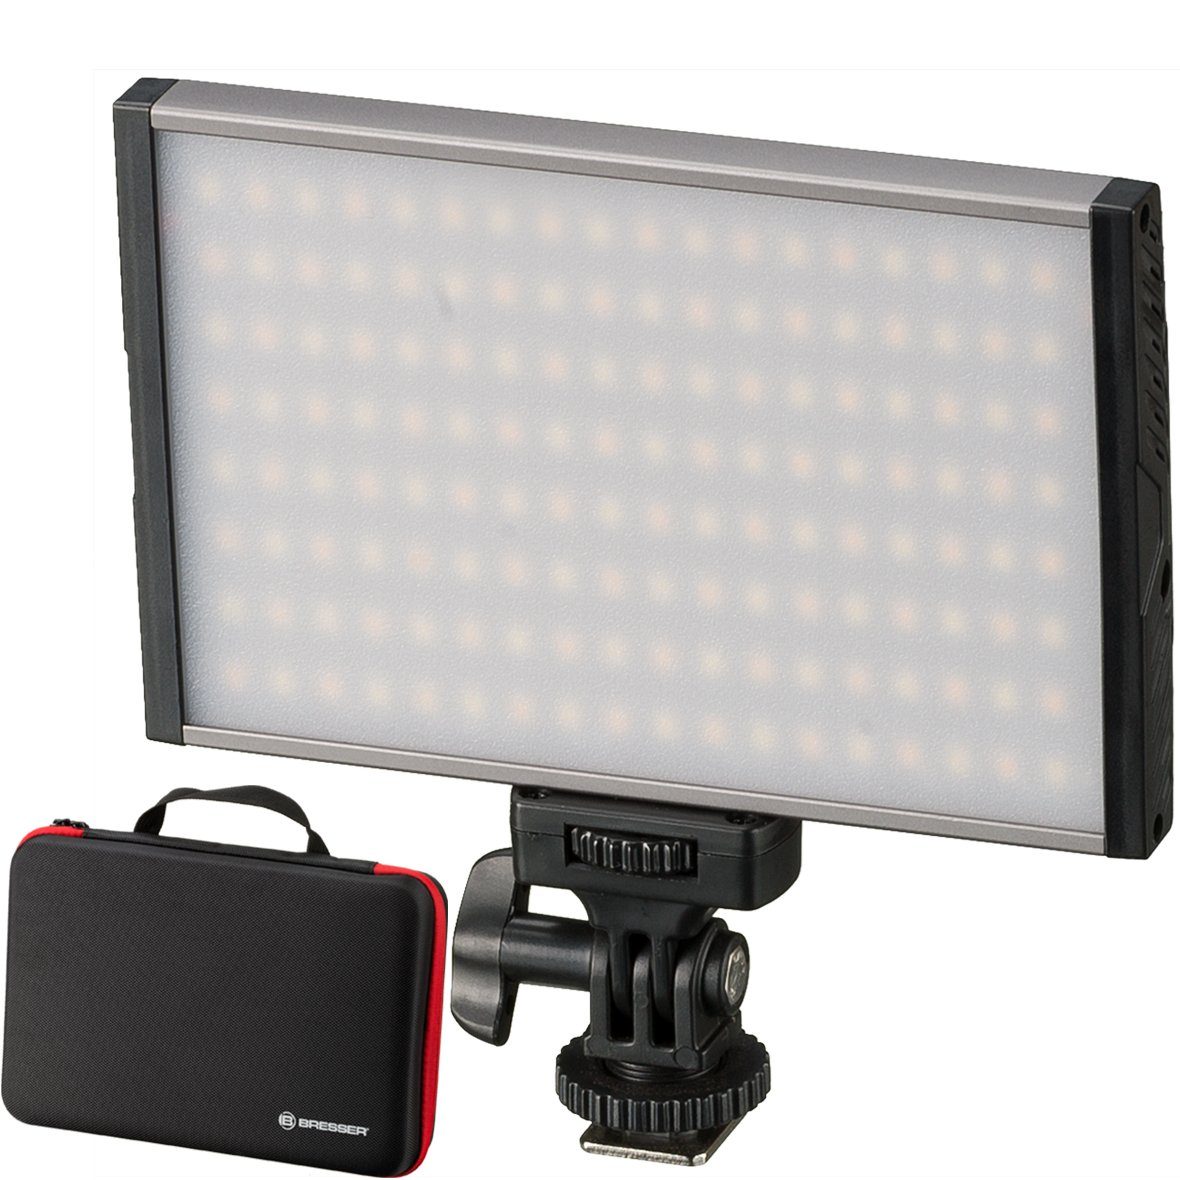 BRESSER Tageslichtlampe PT Pro 15B Bi-Color LED Videoleuchte mit Etui